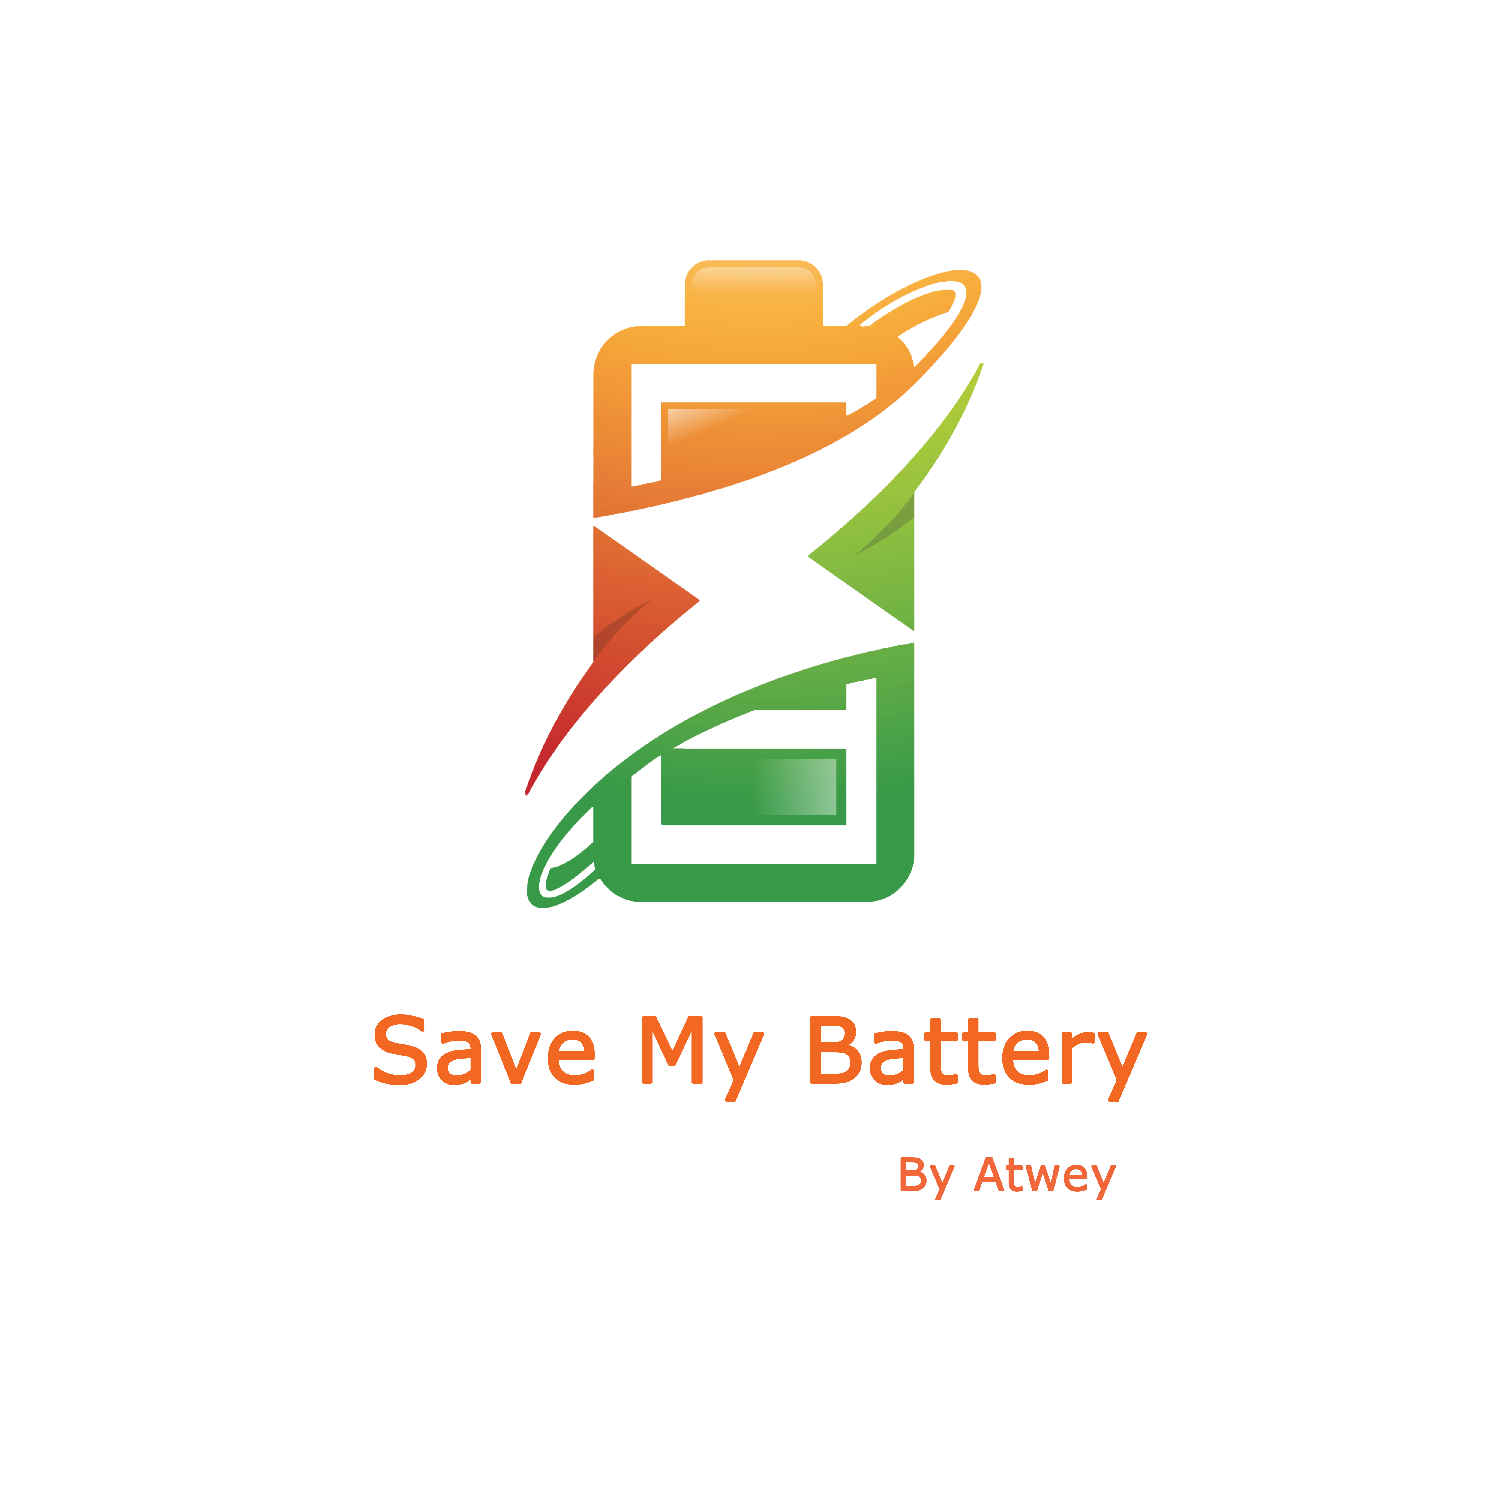 SaveMyBattery